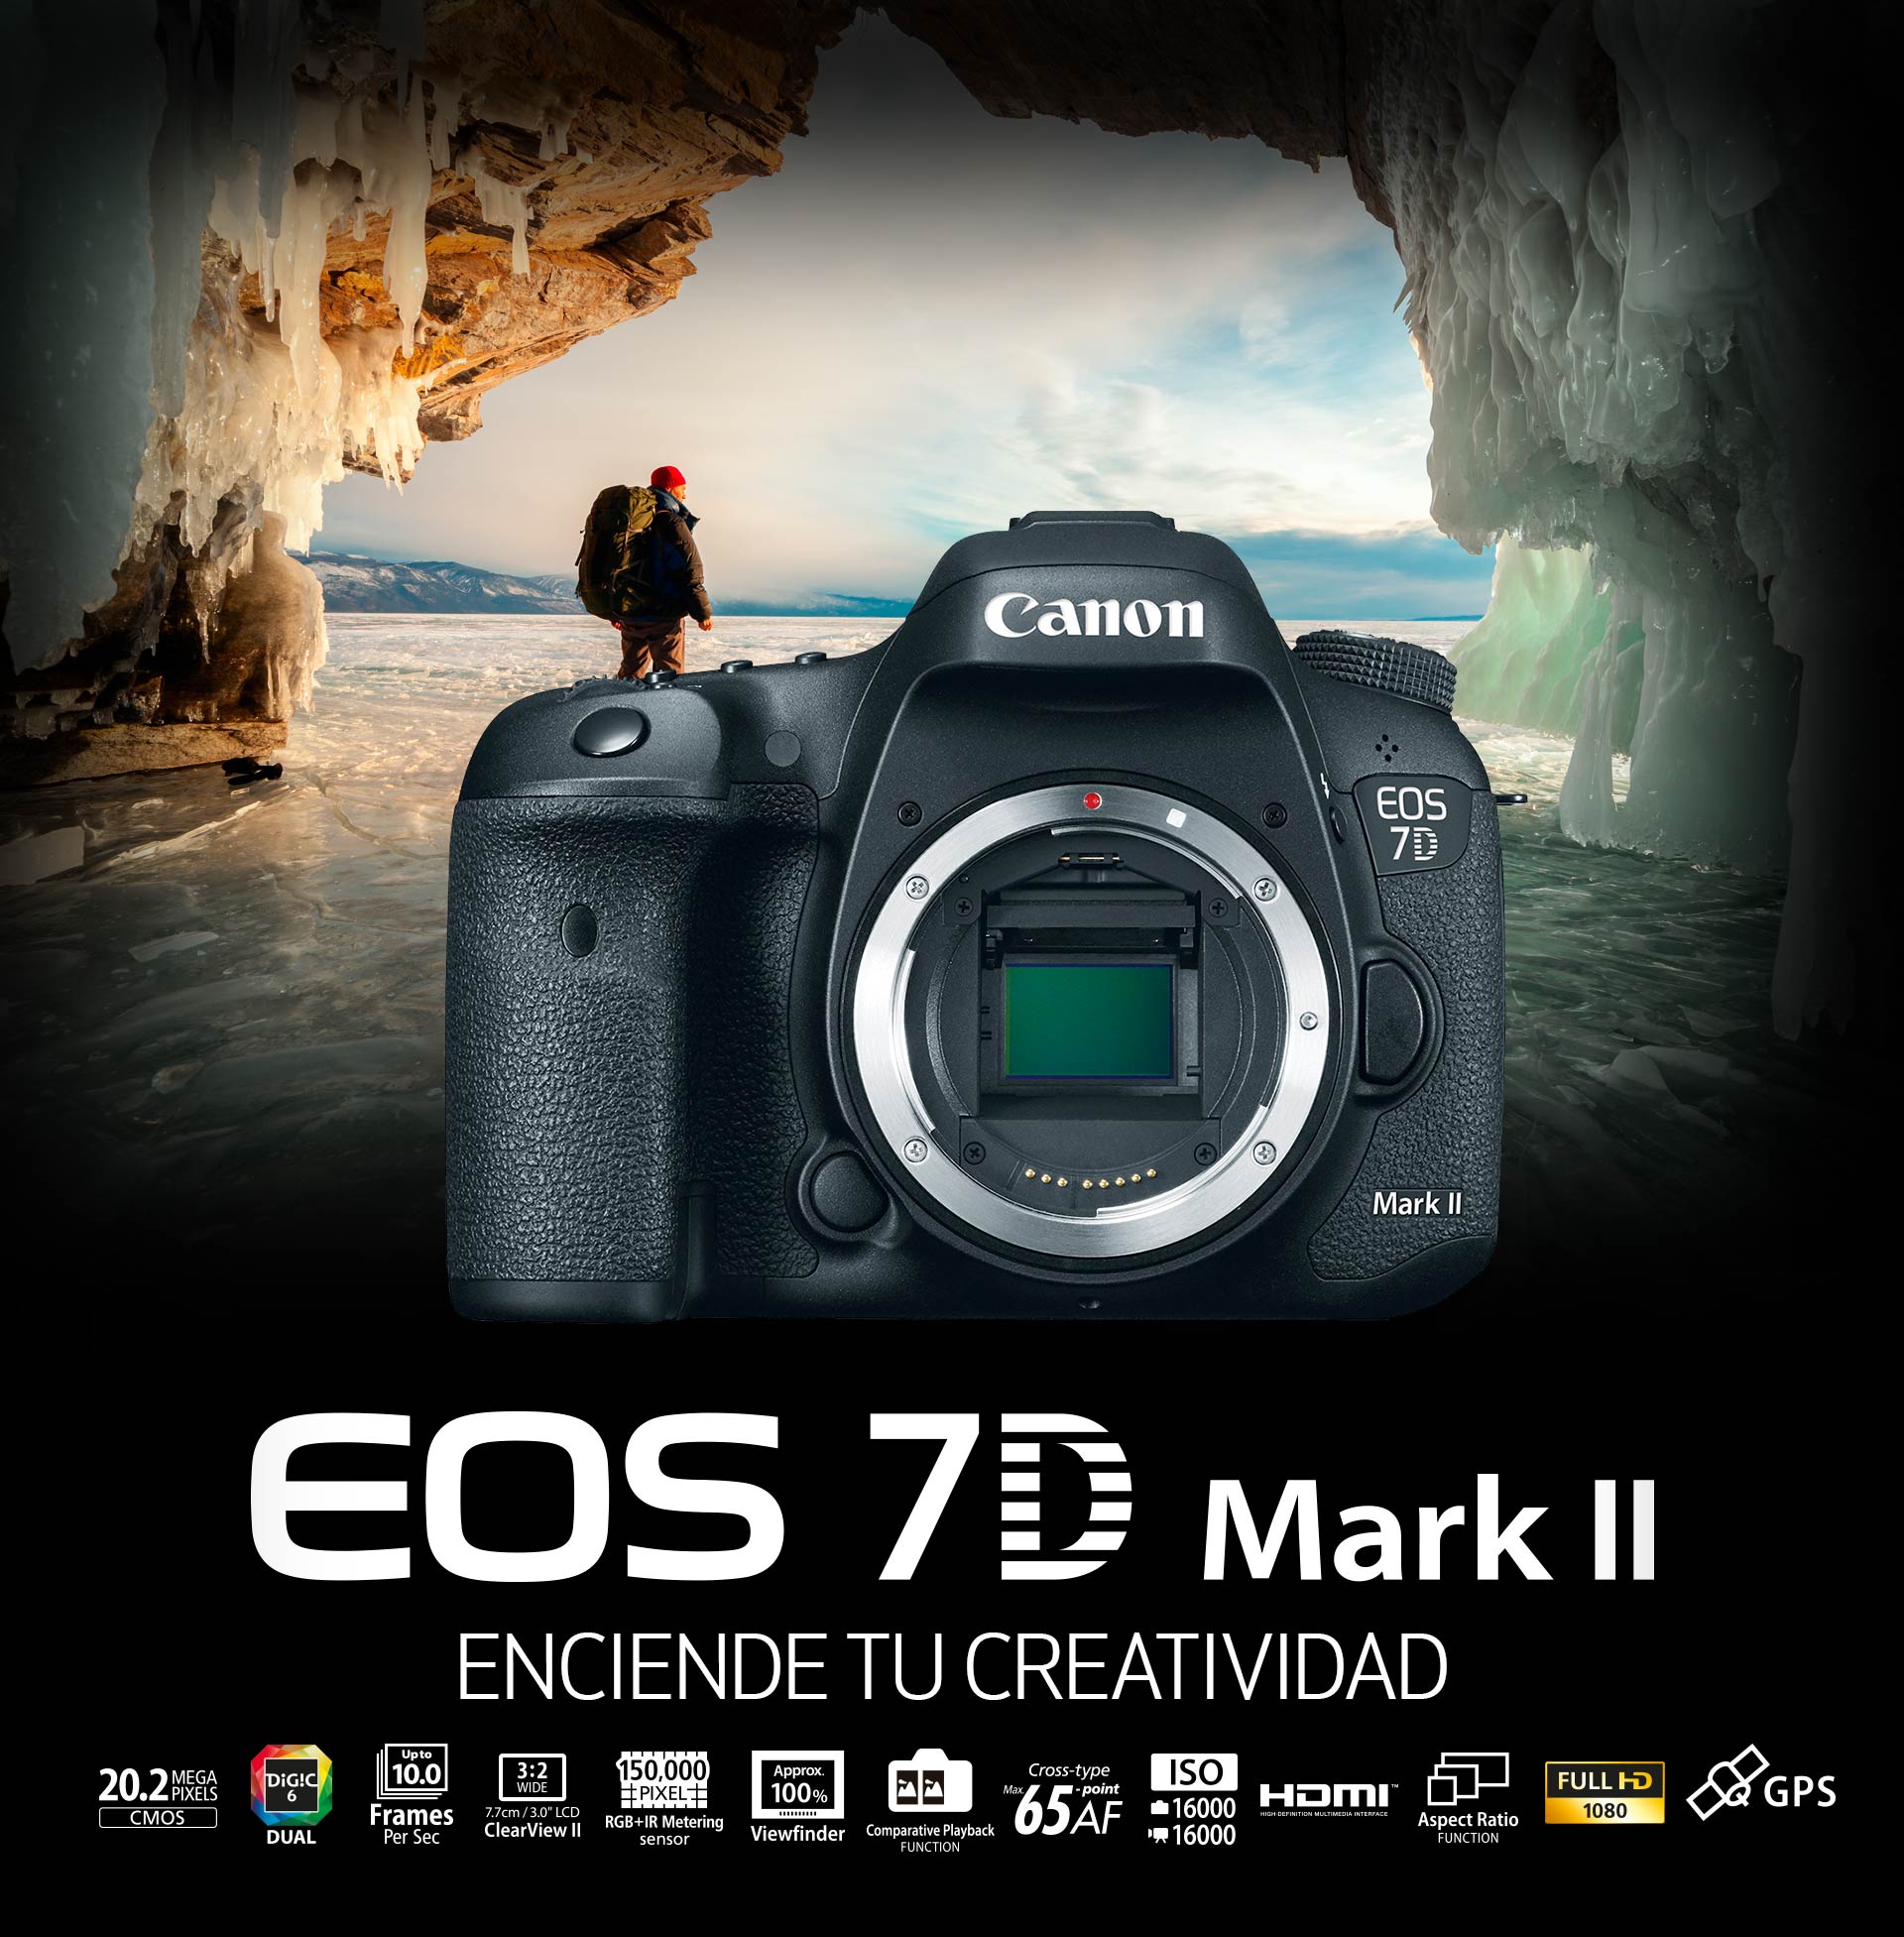 EOS 7D Mark II: Enciende tu creatividad